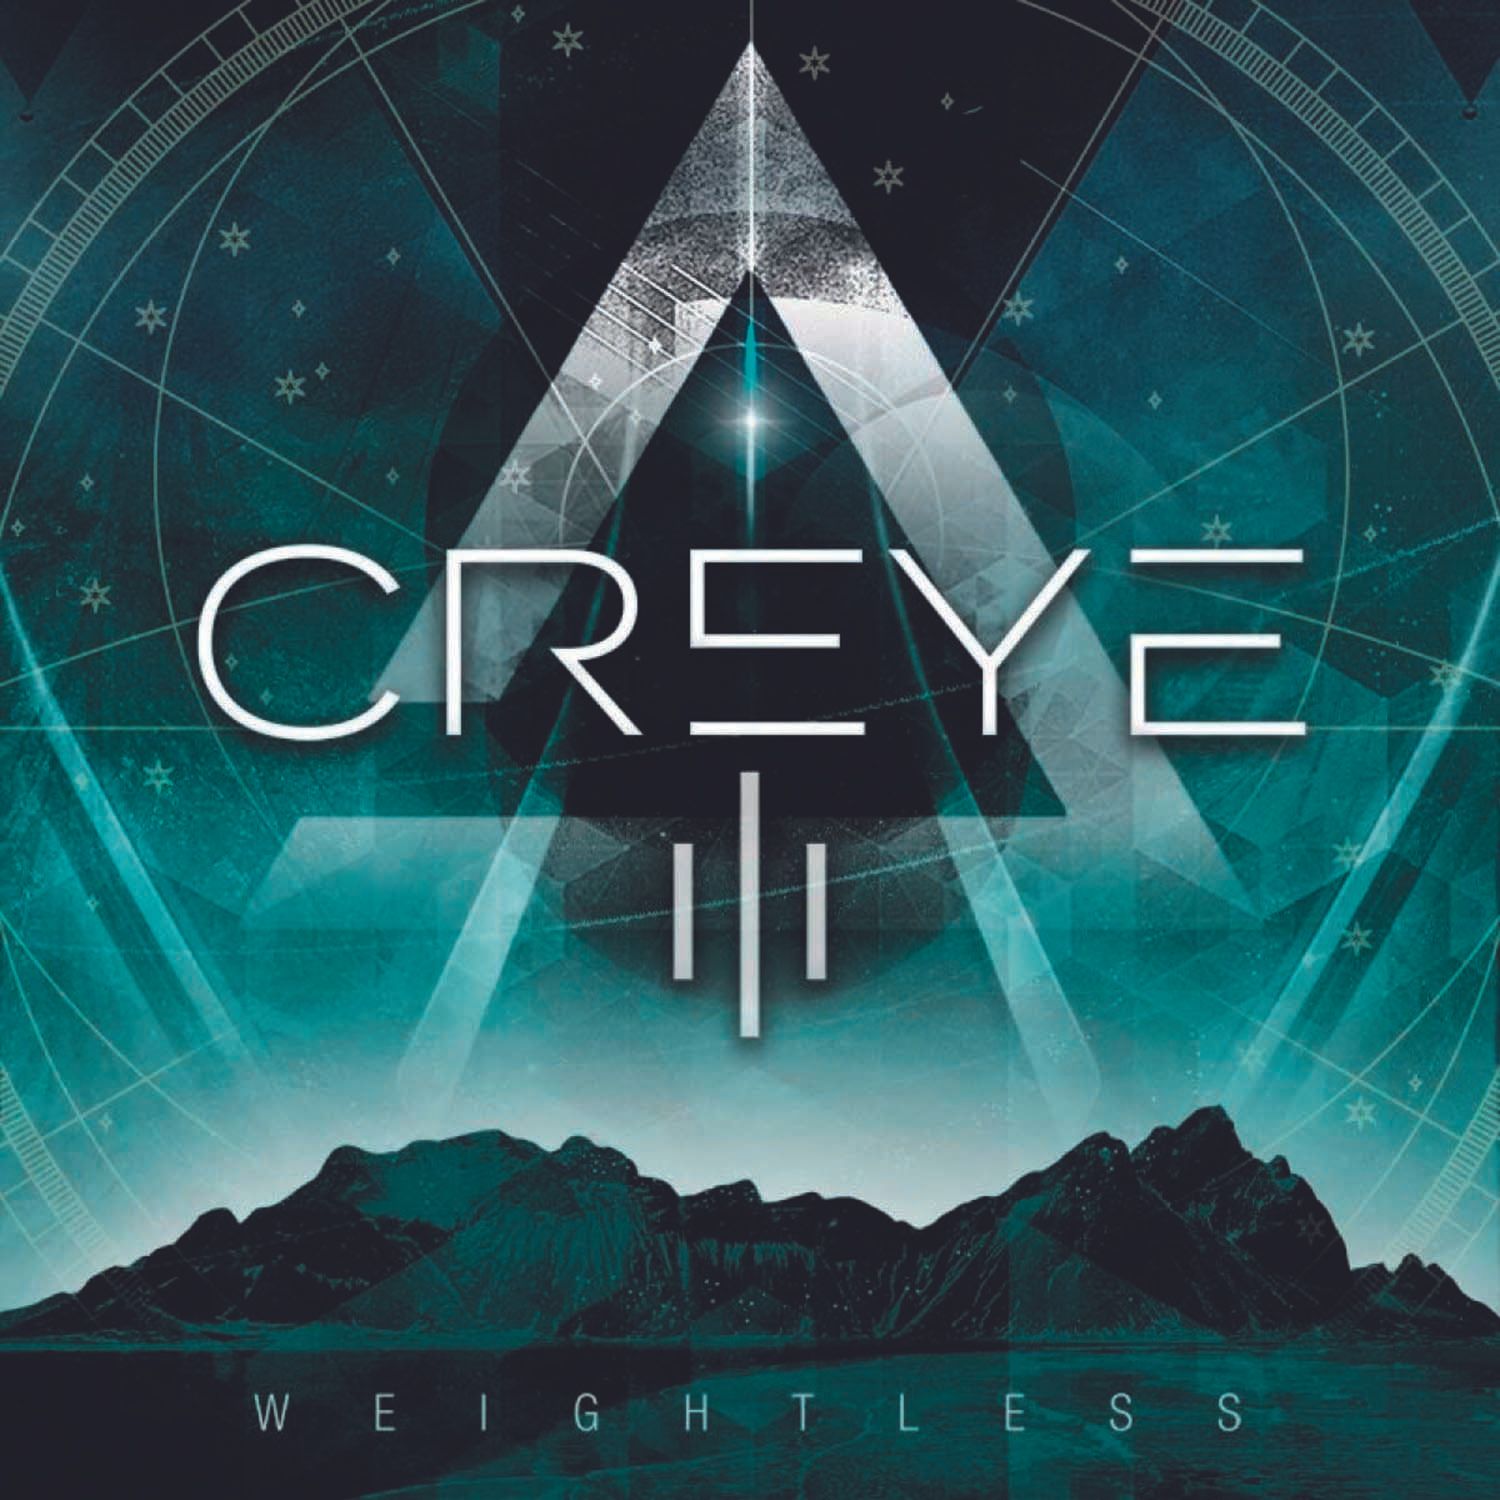 Creye - III - Weightless